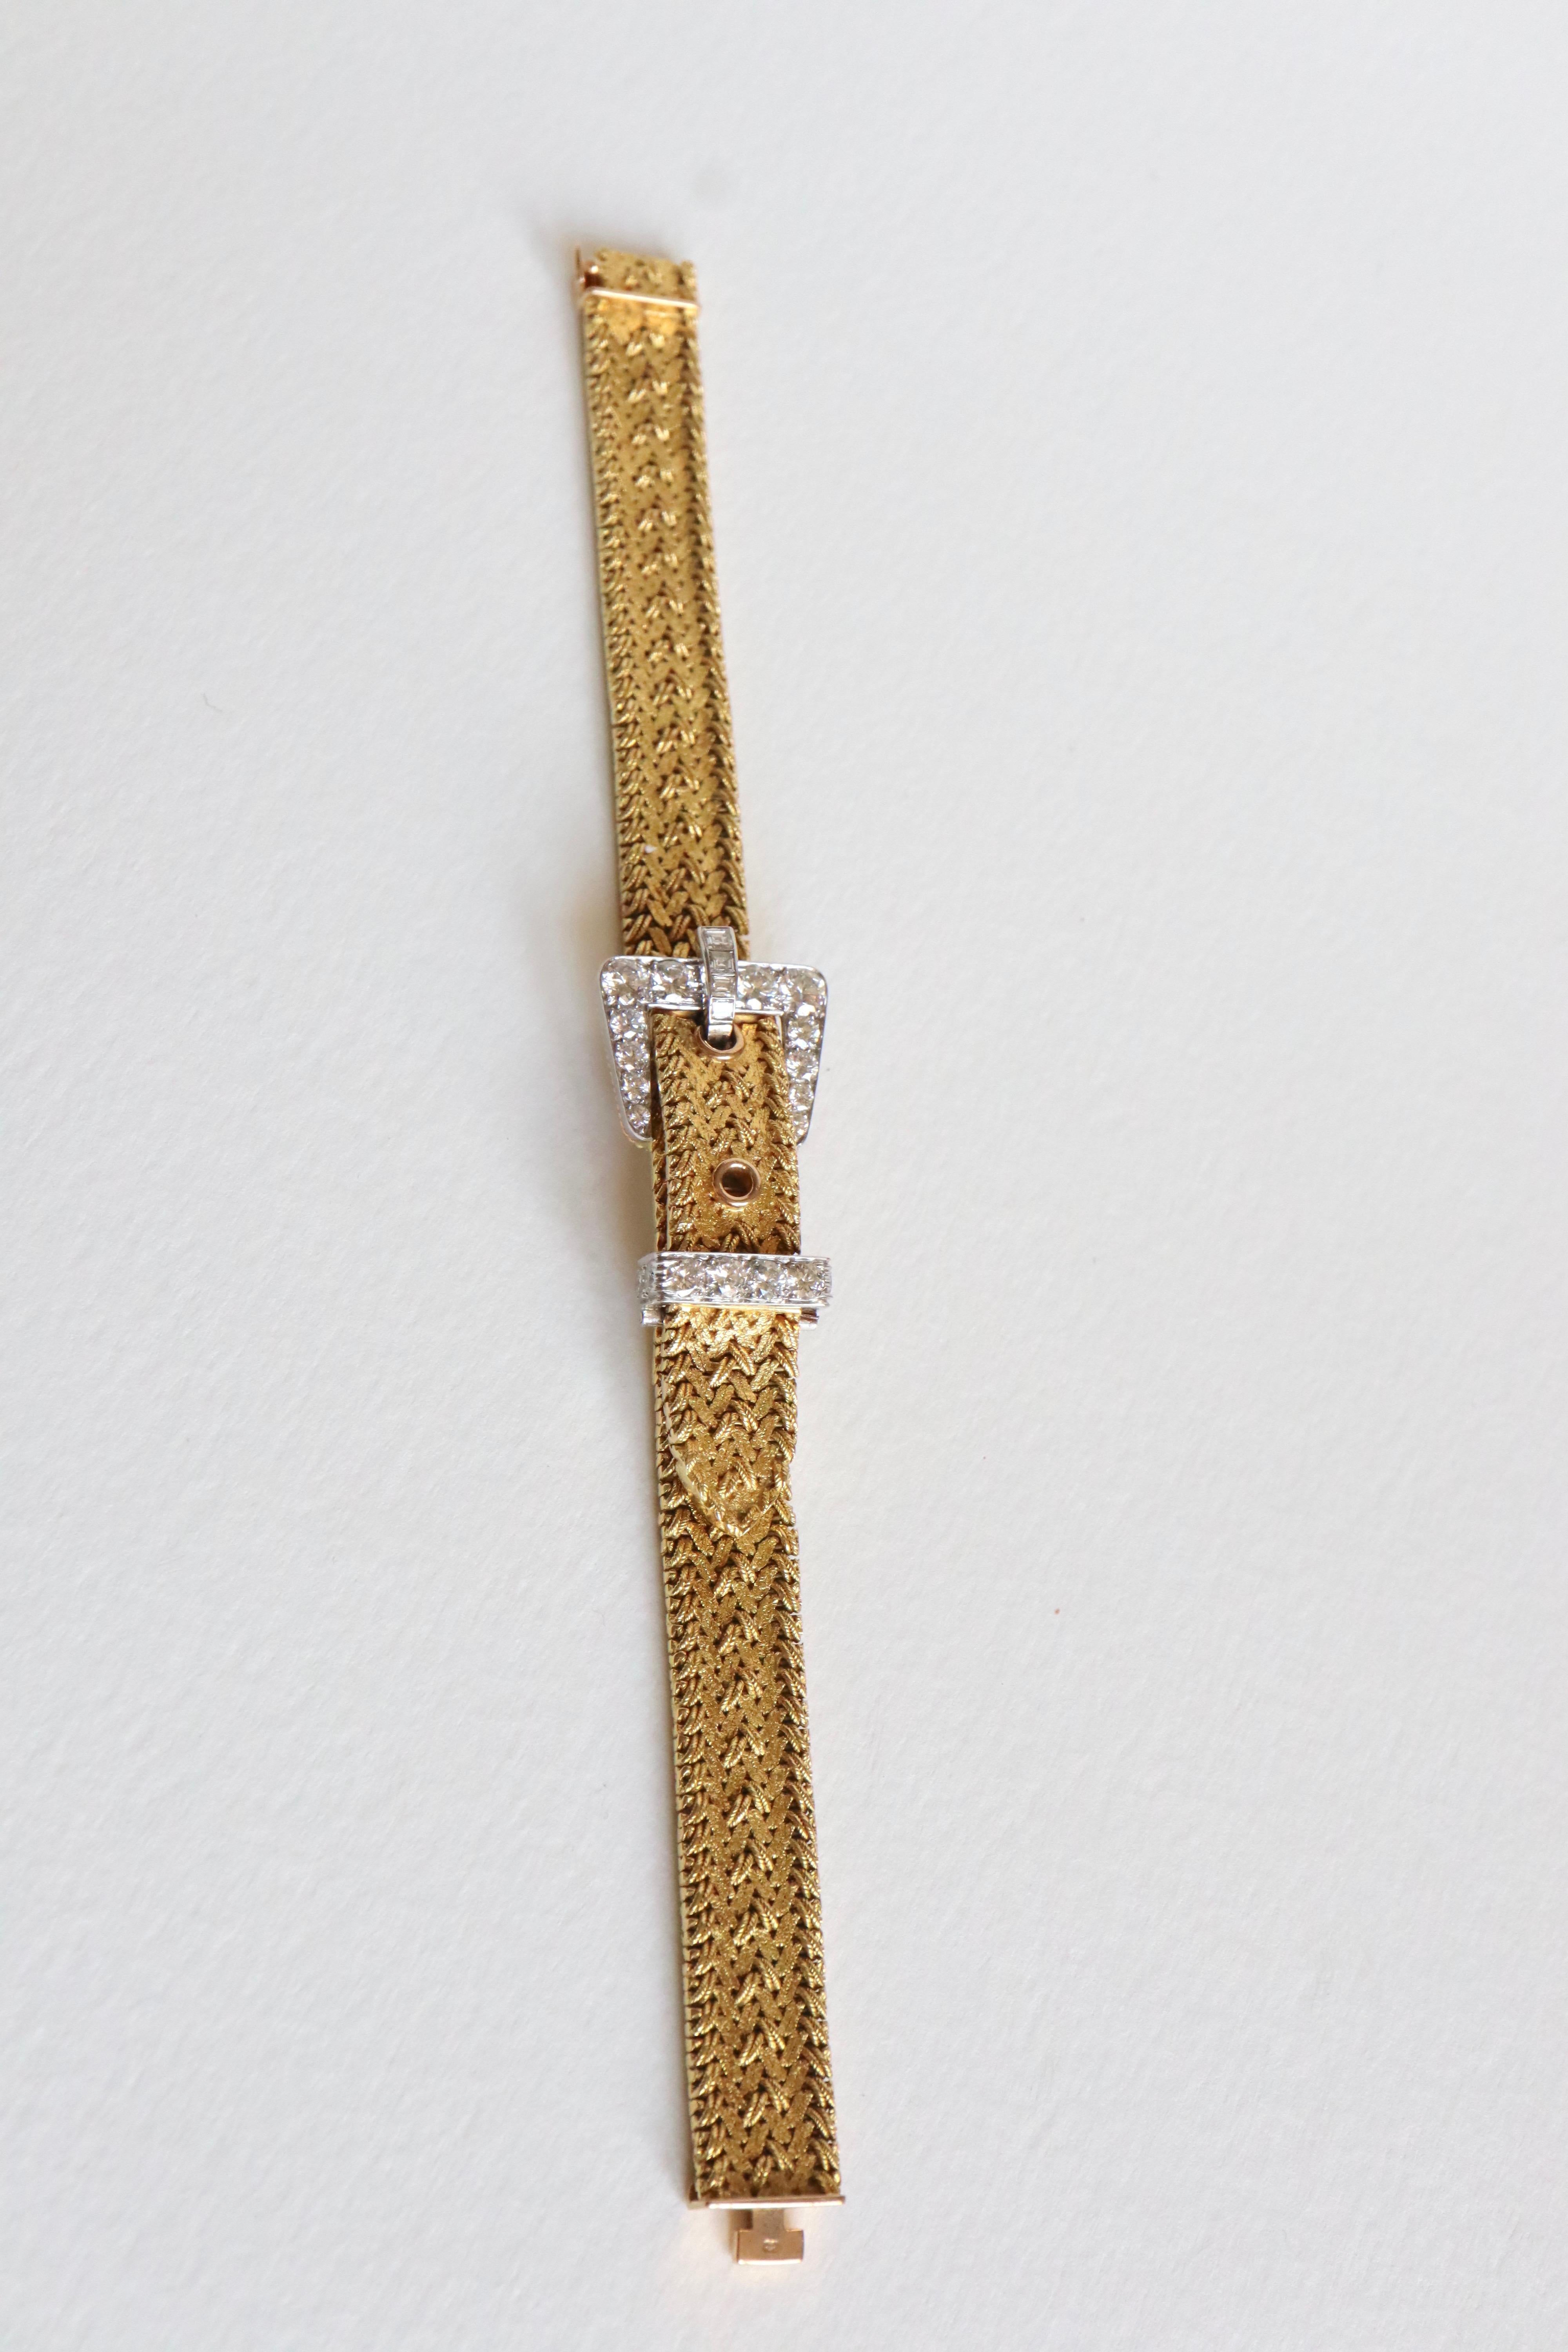 Kutchinsky Women's Secret Bracelet Watch in 18 Karat Gold 3 Carat Diamonds 3